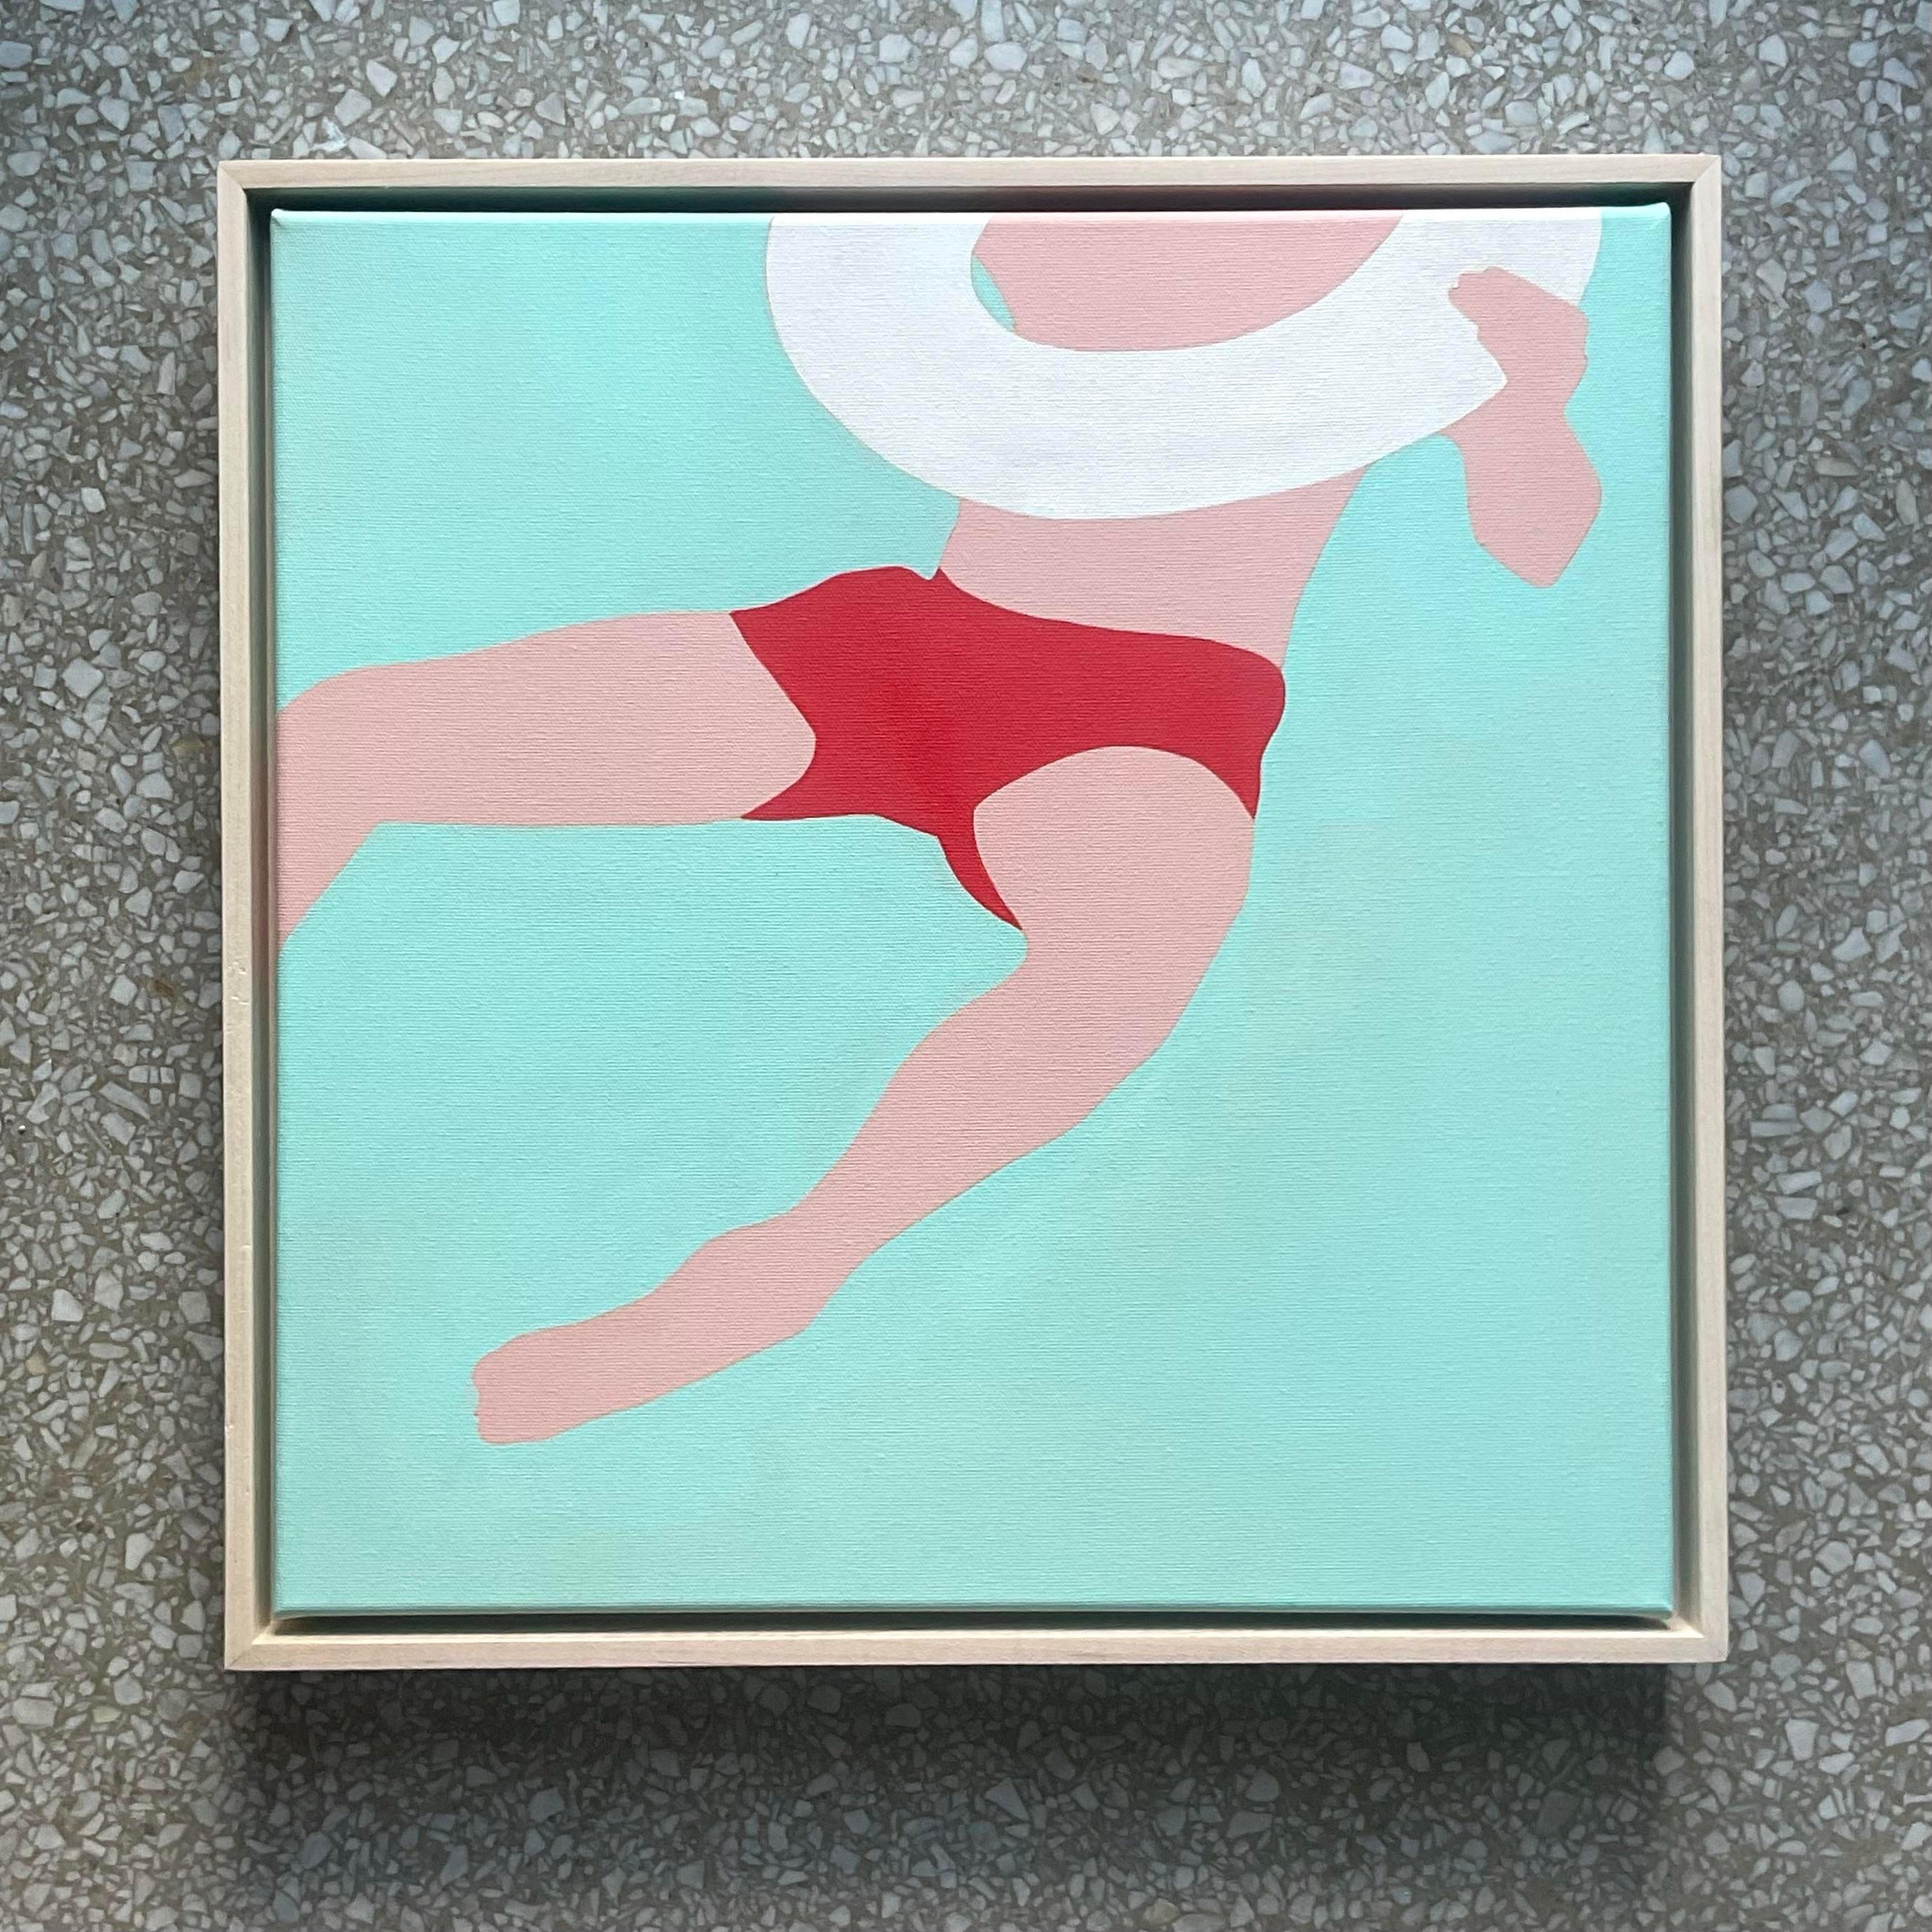 Kräftige Pinselstriche und leuchtende Farbtöne bedecken dieses neoexpressionistische Original von Melo Porter auf Leinwand. Sie verkörpern die Essenz amerikanischer künstlerischer Innovation mit einem klaren, modernen Twist. Erworben aus einem